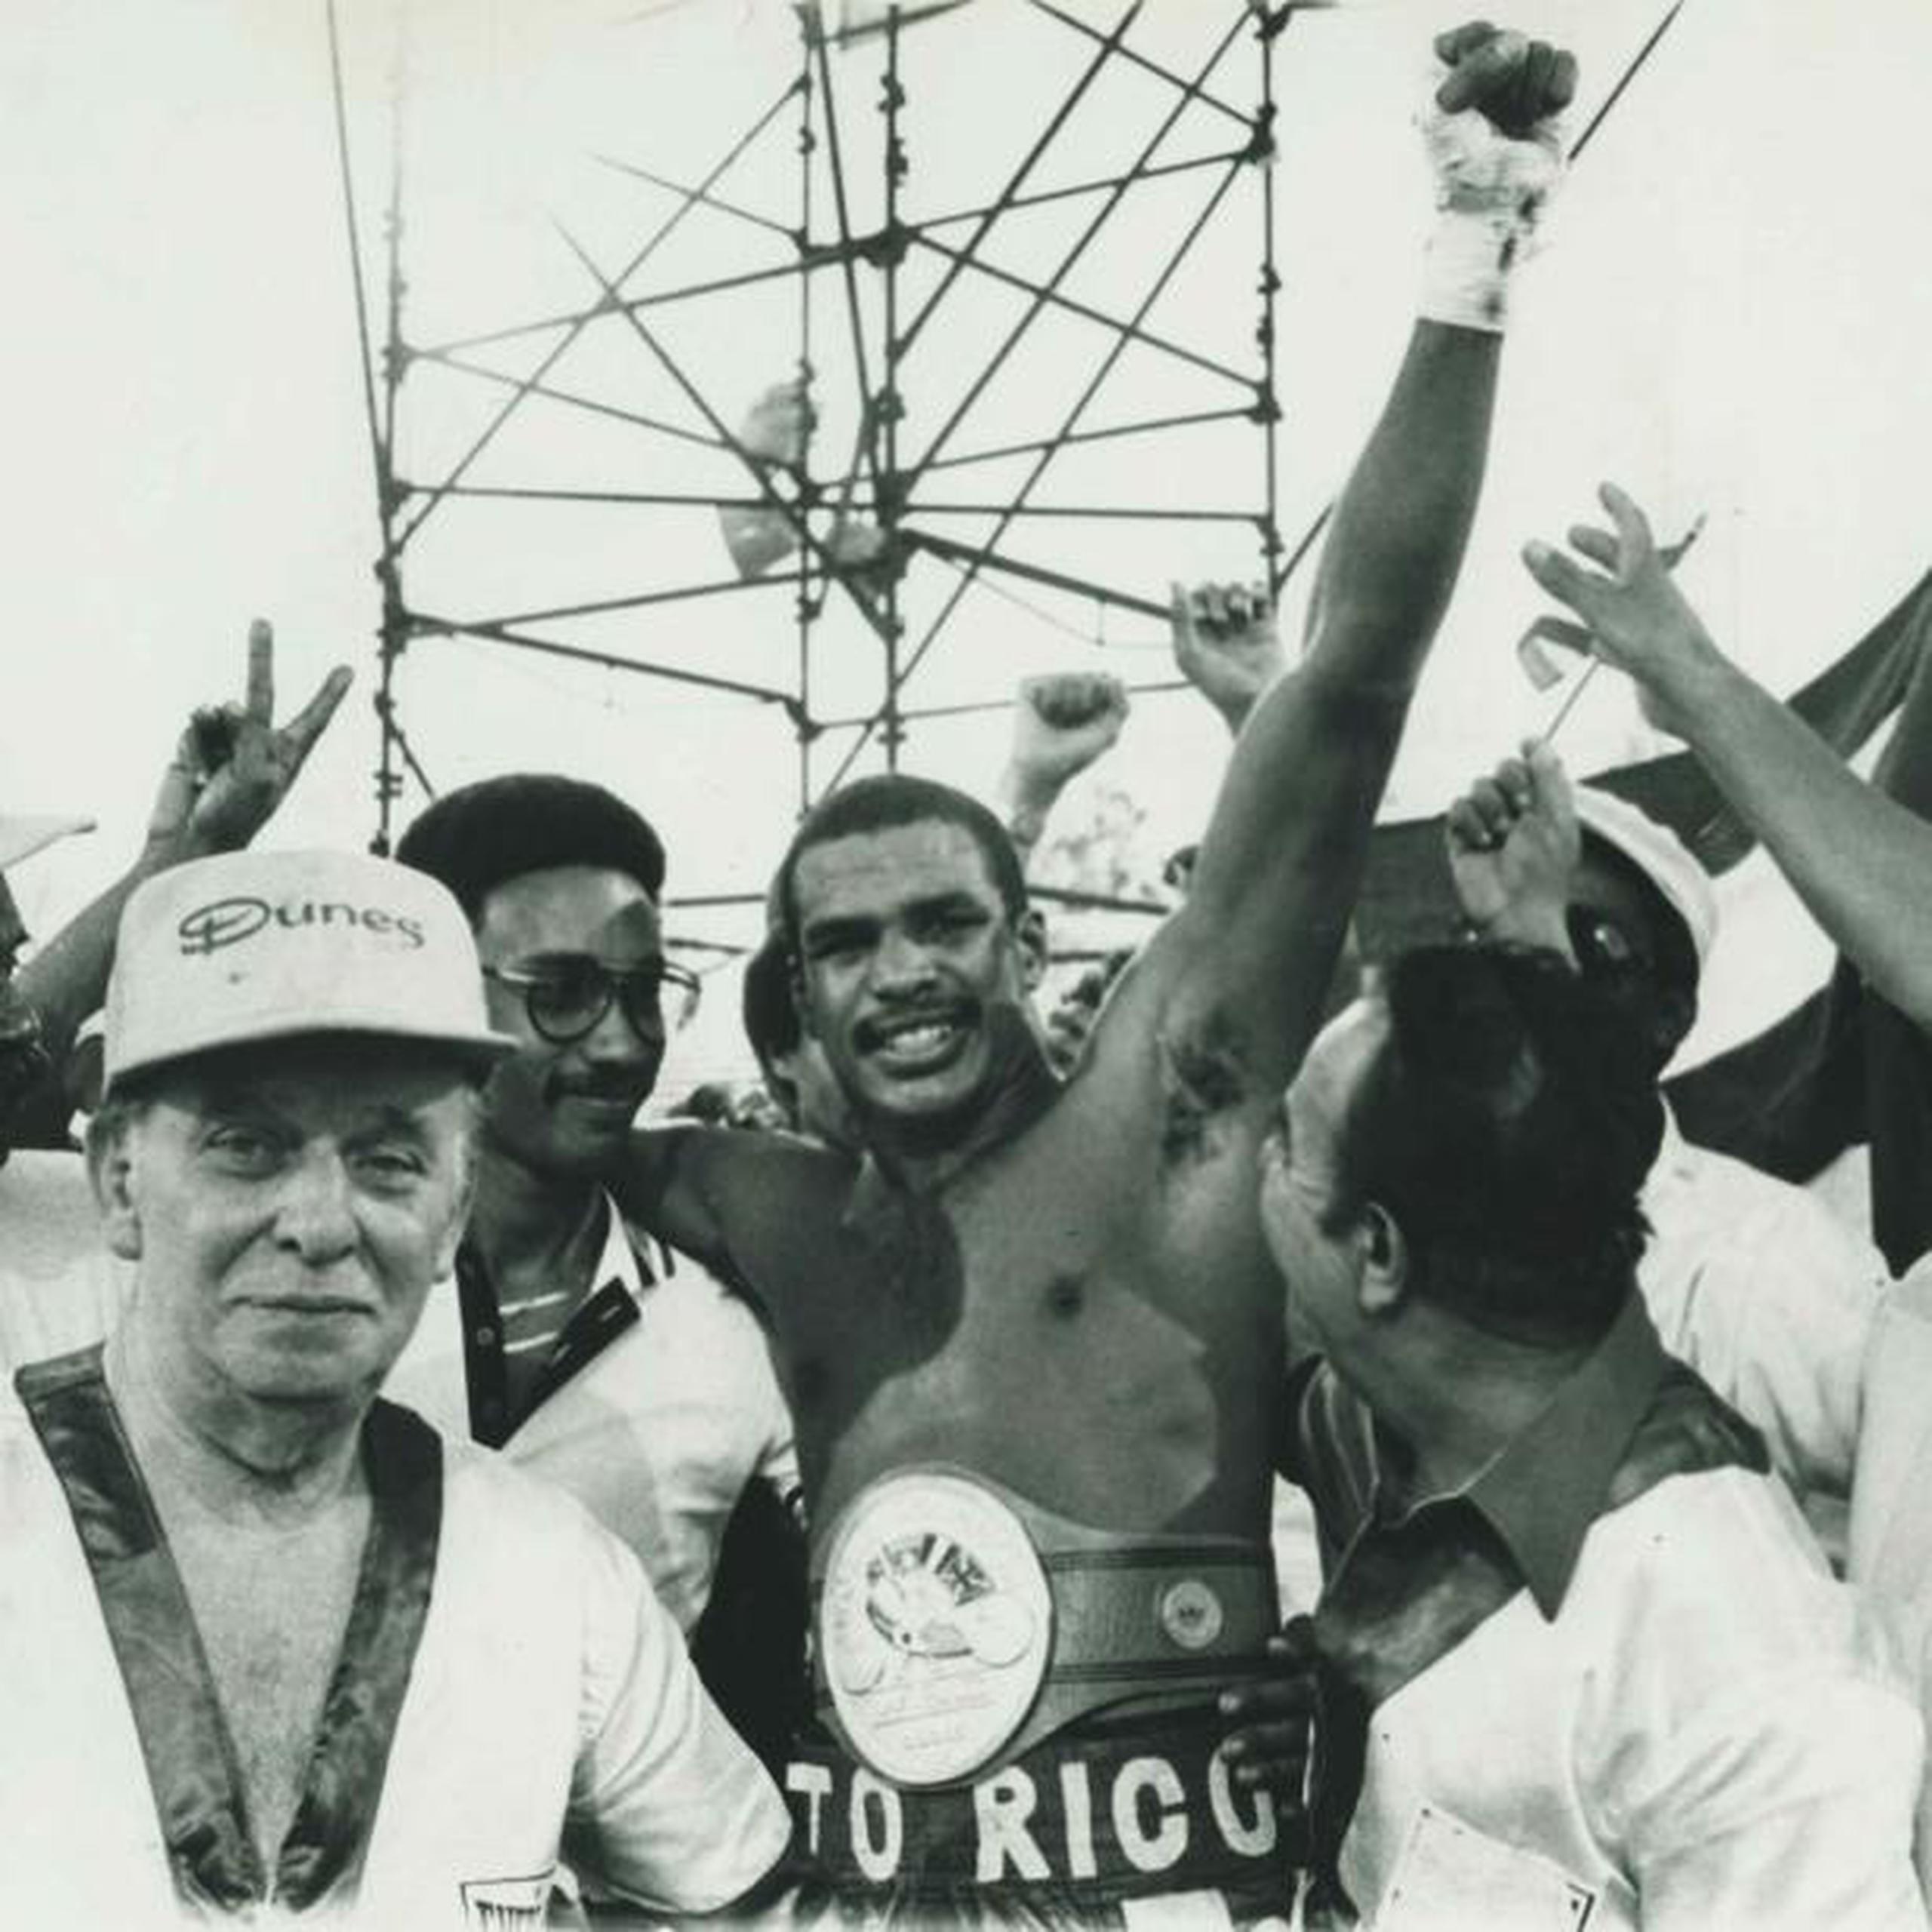 Carlos ‘Sugar’ de León fue campeón crucero de Consejo Mundial de Boxeo (CMB). Durante su carrera, enfrentó figuras como Leon Spinks y Evander Holyfield, entre otros.. (Archivo)